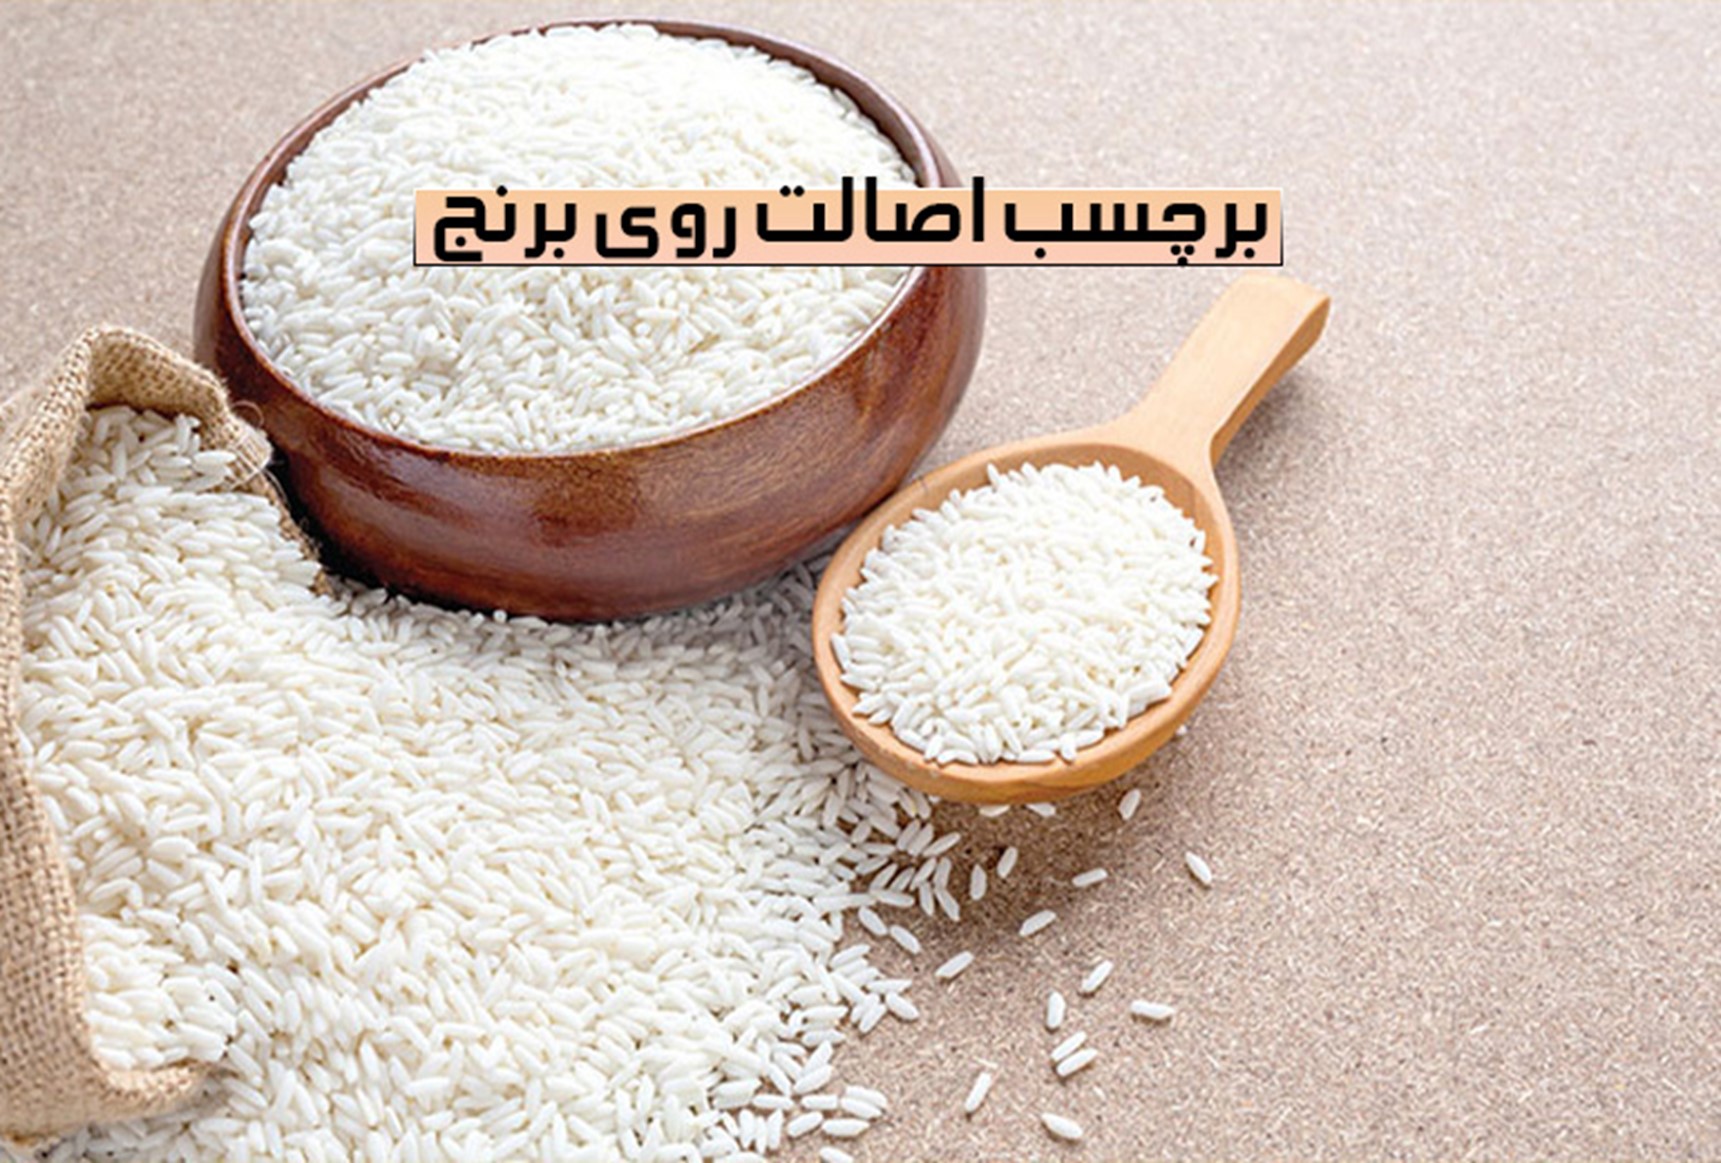 شناخت برنج اصیل ایرانی با لیبل اصالت کالا